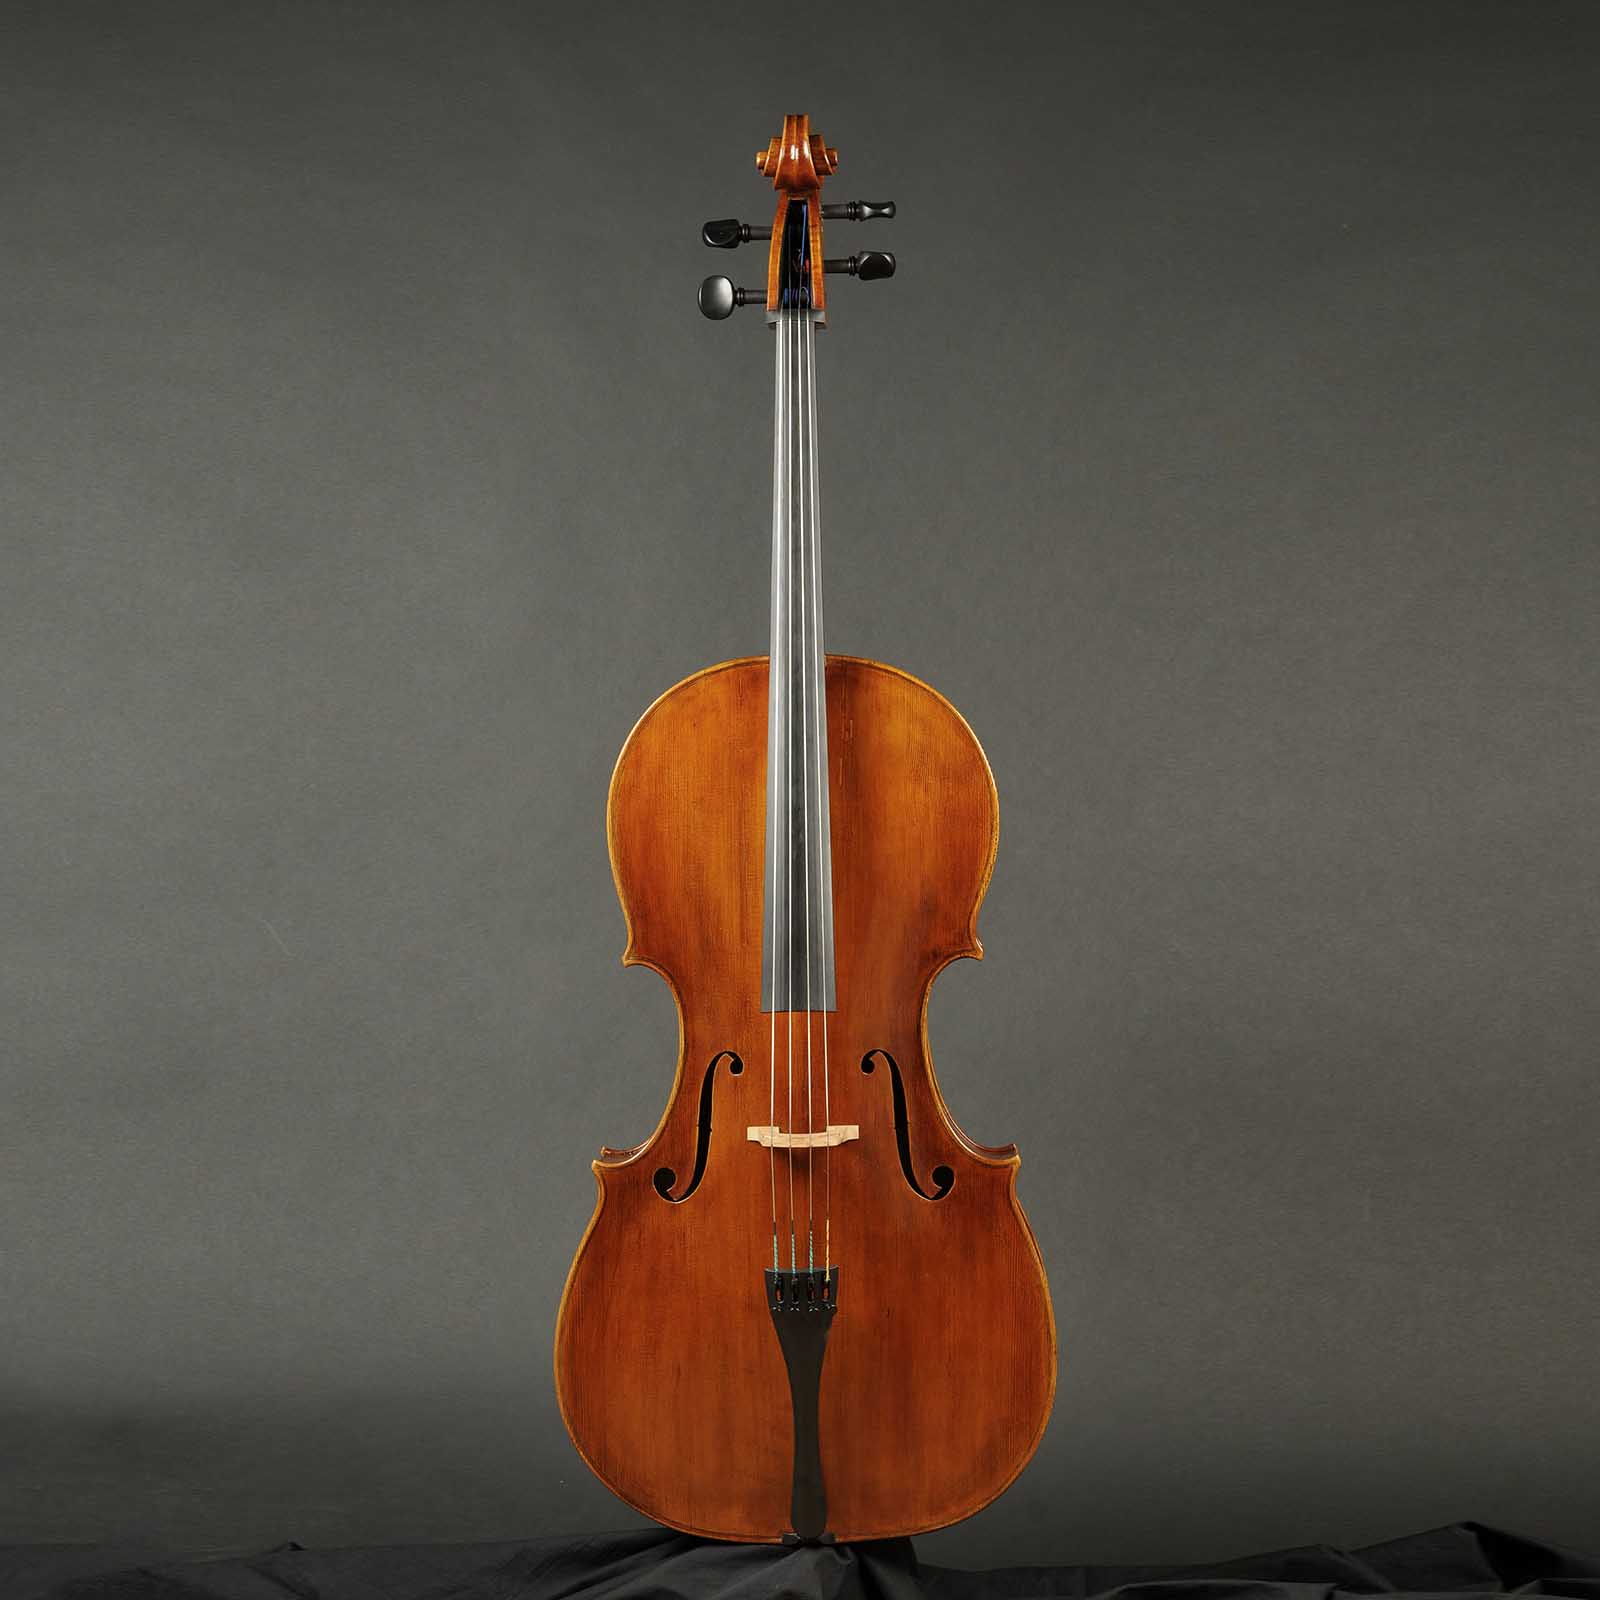 Antonio Stradivari Cremona 1730 “Feuermann“ “Fondo Unico“ - Image 1